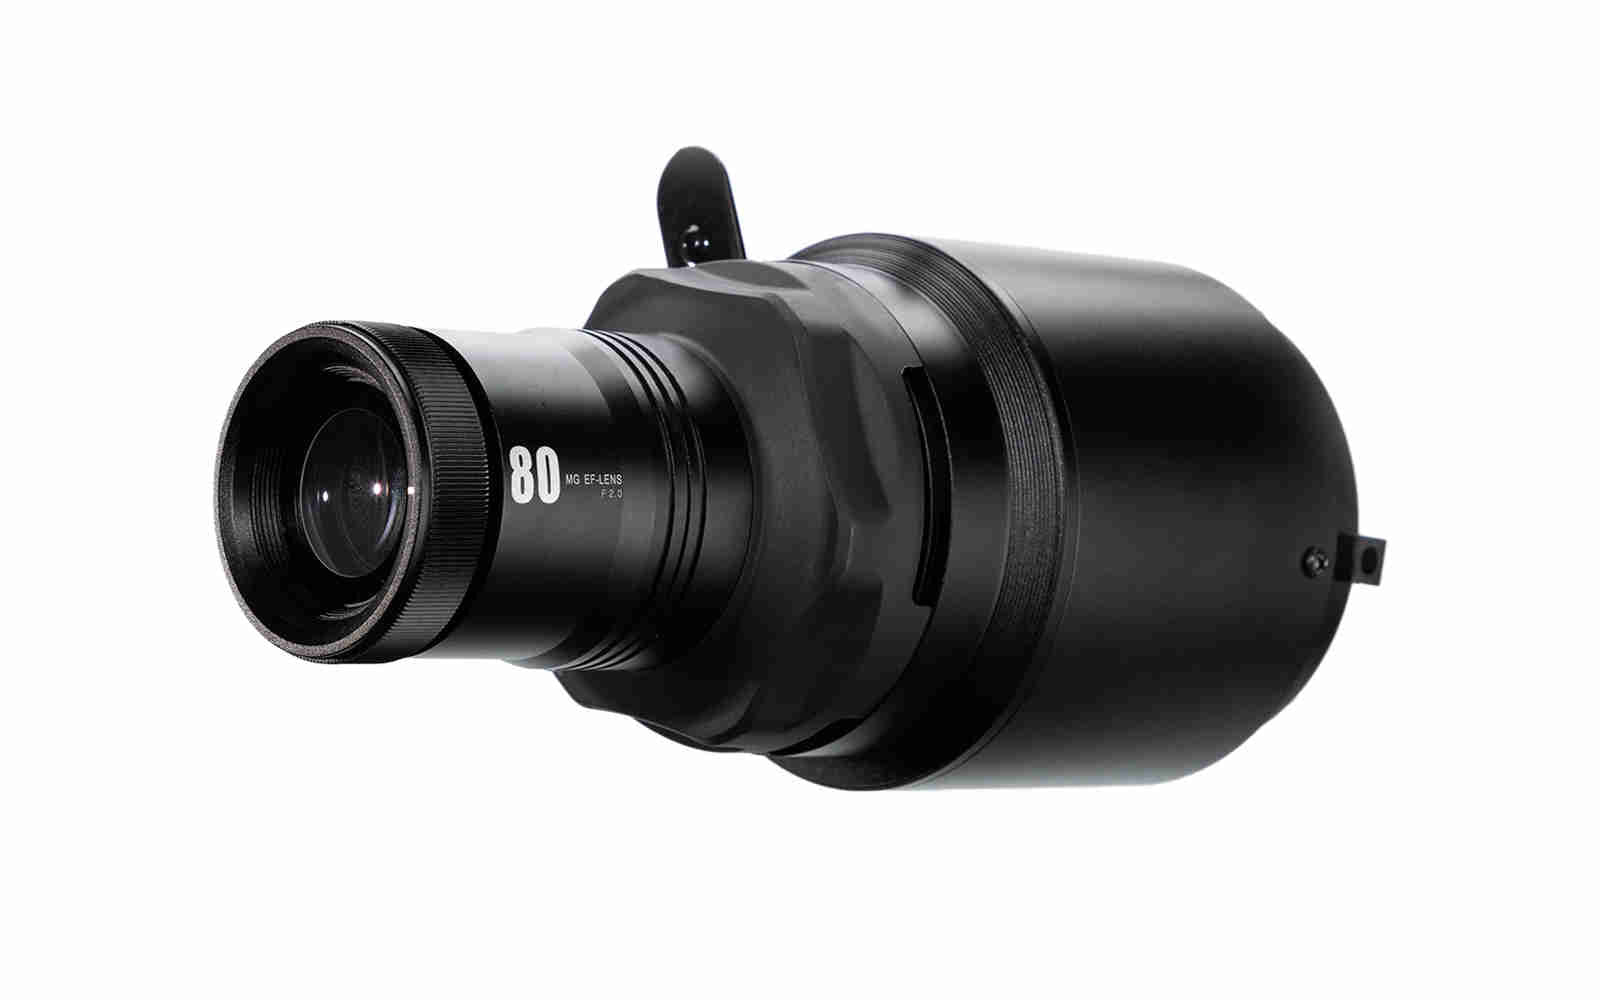 ADB - Ø 200 Fresnel Lens for F201 #30274 lightspares Shop